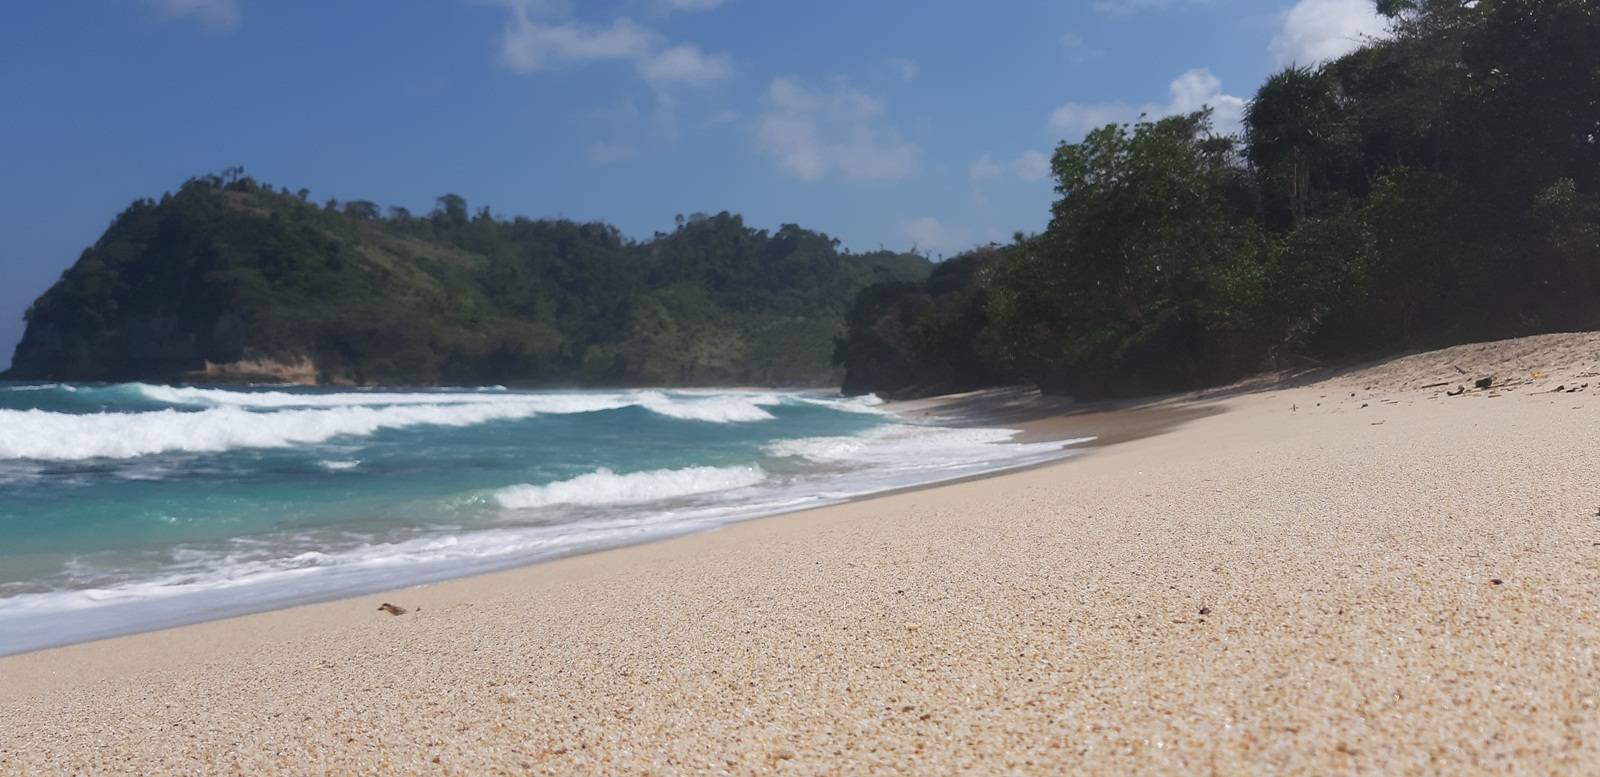 Kondisi Pantainya yang Bersih dan Berkilau (c) Mei Indriani/Travelingyuk